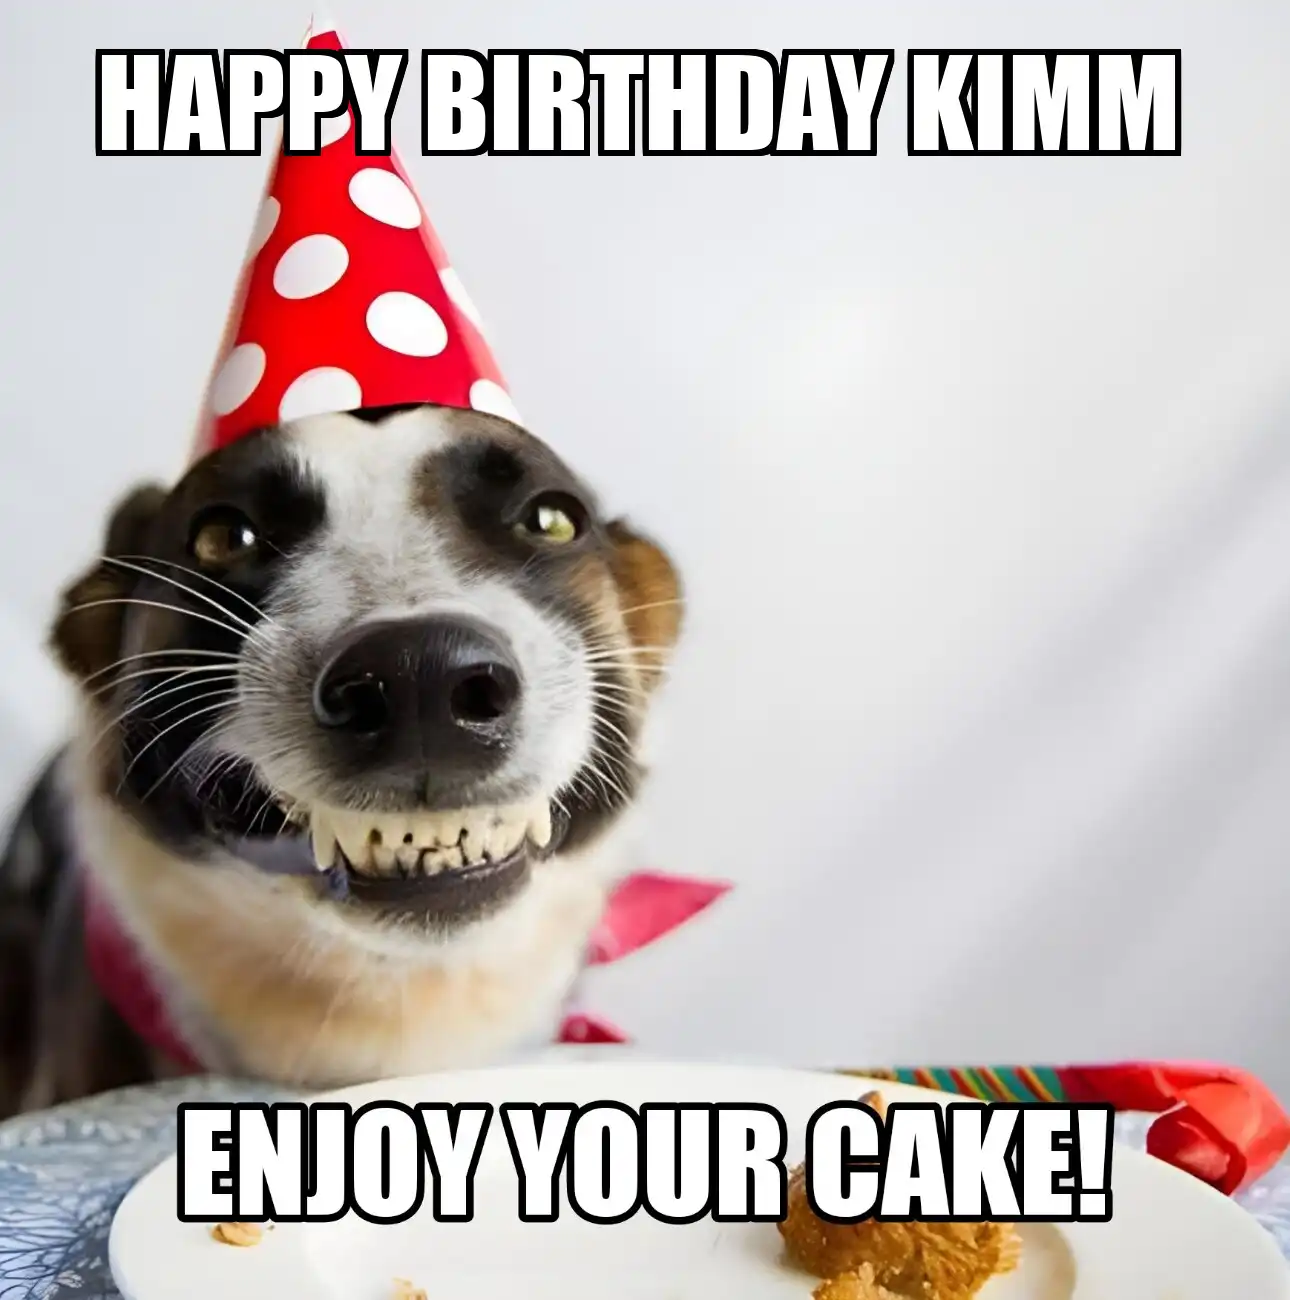 Happy Birthday Kimm Enjoy Your Cake Dog Meme